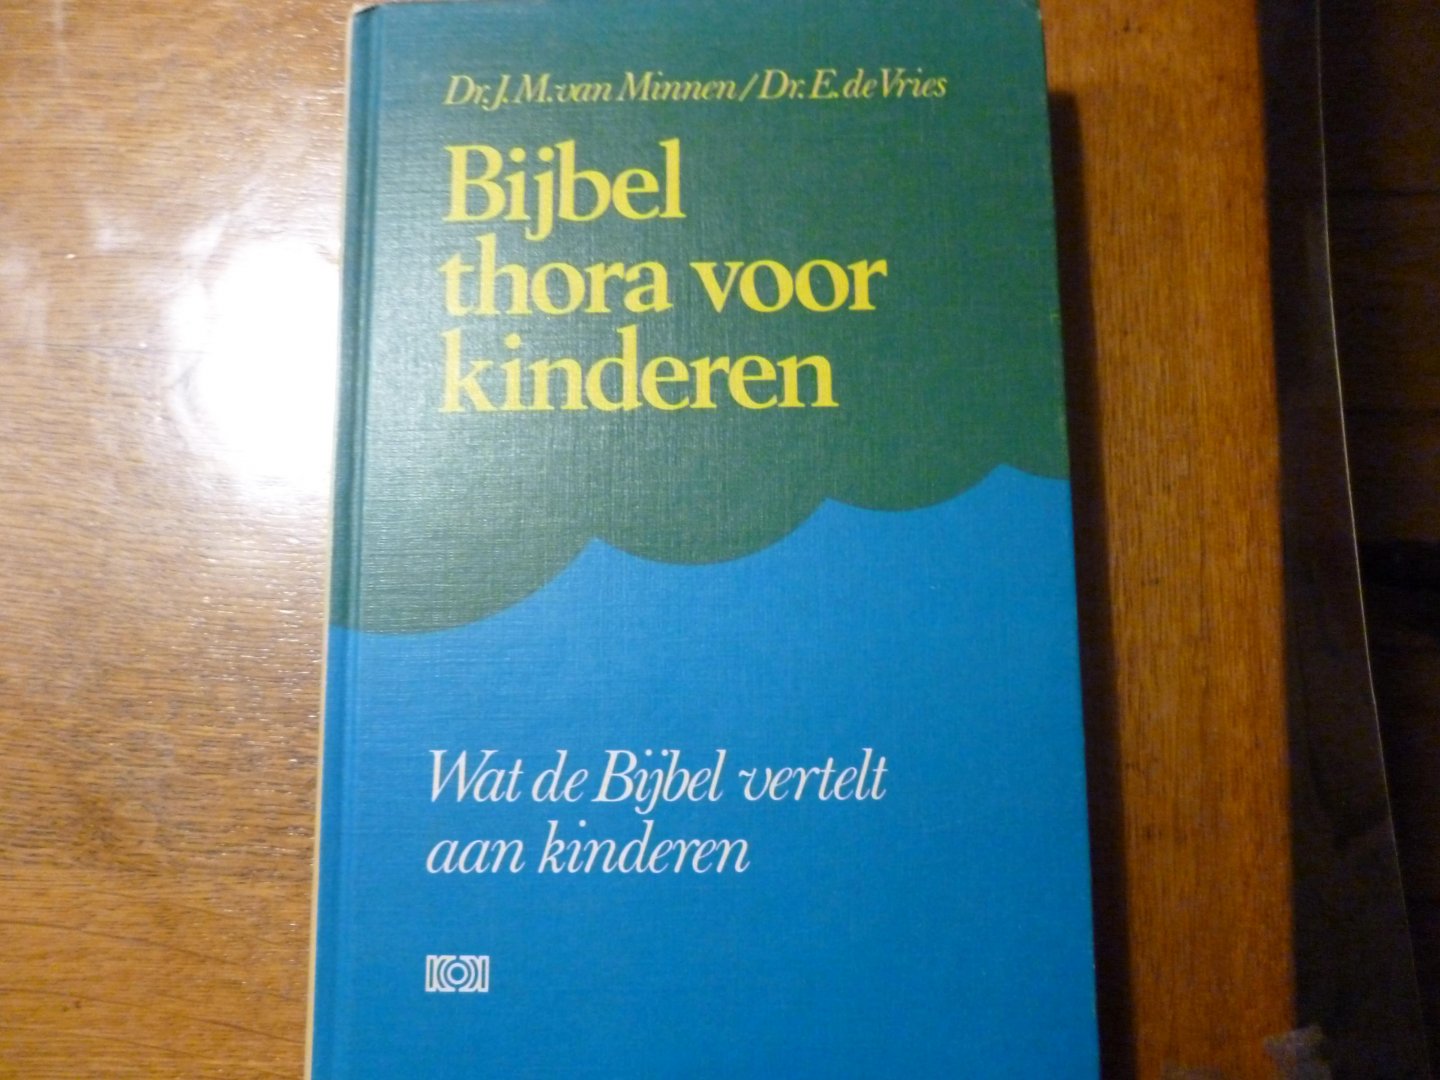 Minnen  J.M. van en E. de Vries - Bijbel thora voor kinderen